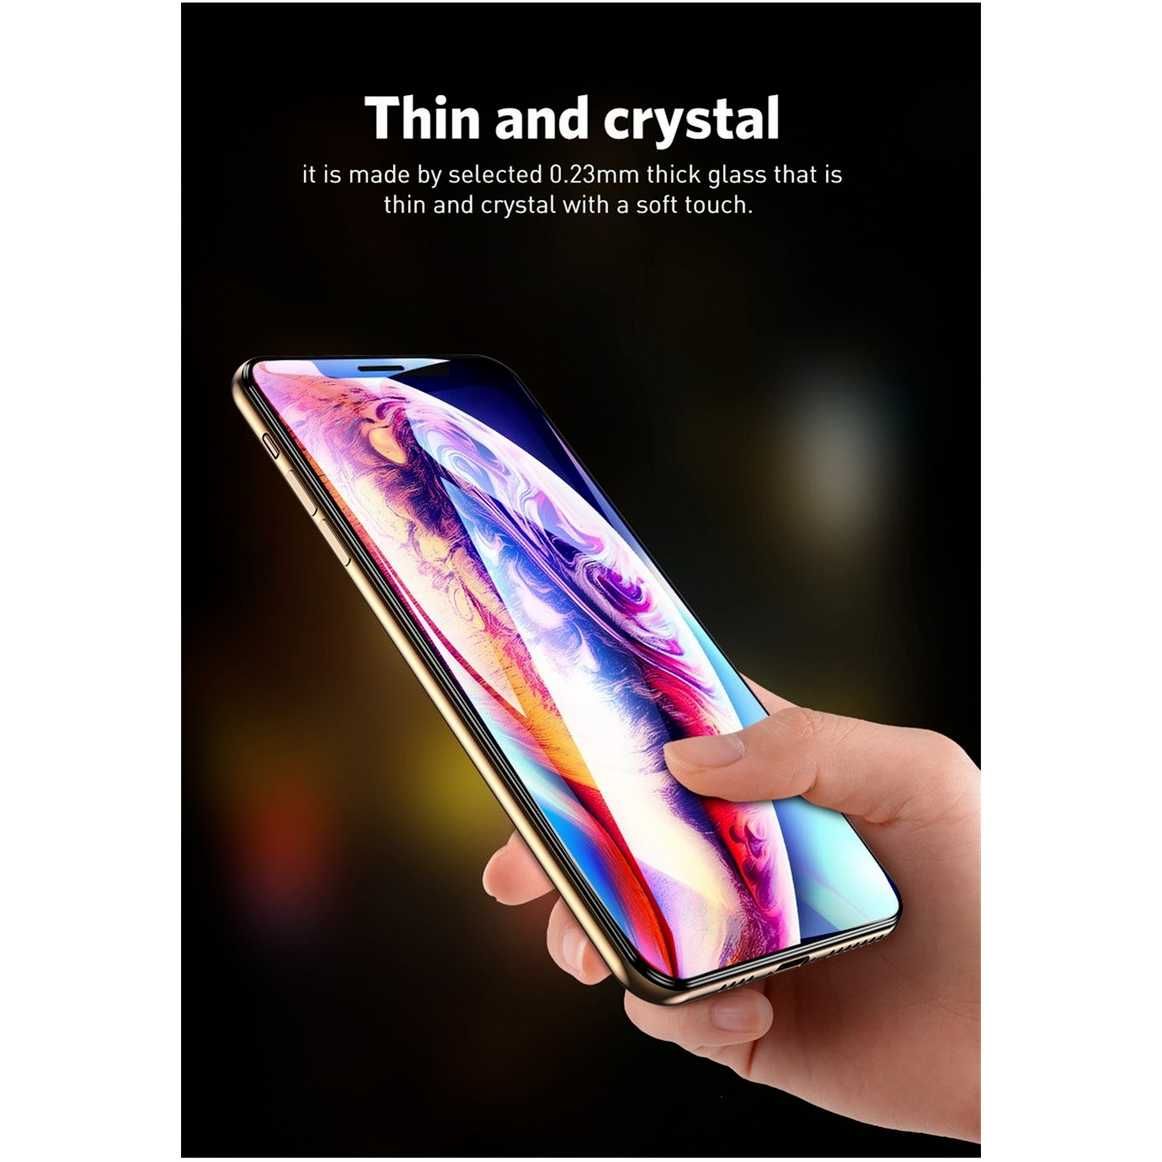 Folie Sticla Cristala 9D, Iphone Orice Model, Oferta 25 ron